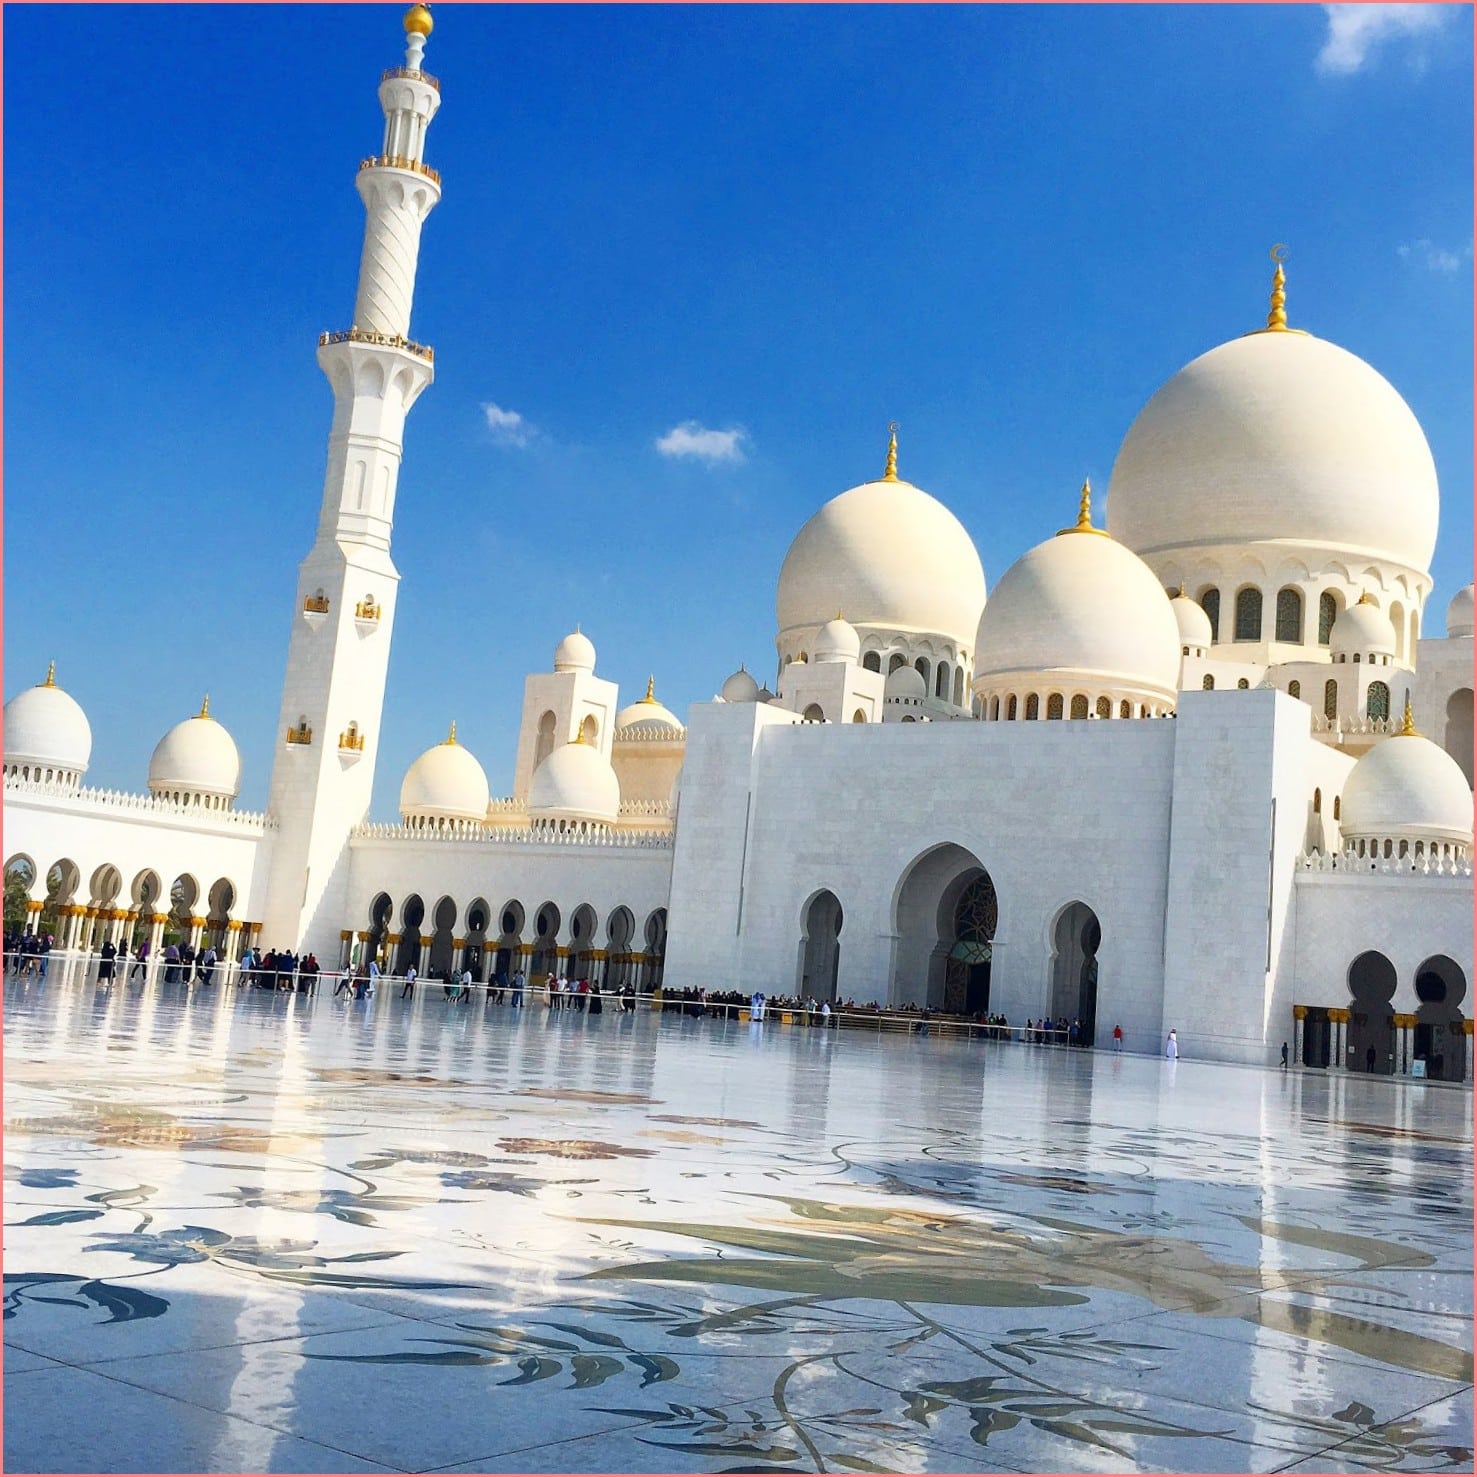 Мечети в Дубае, которые вы должны посетить Дубае     
   Помимо мечетей